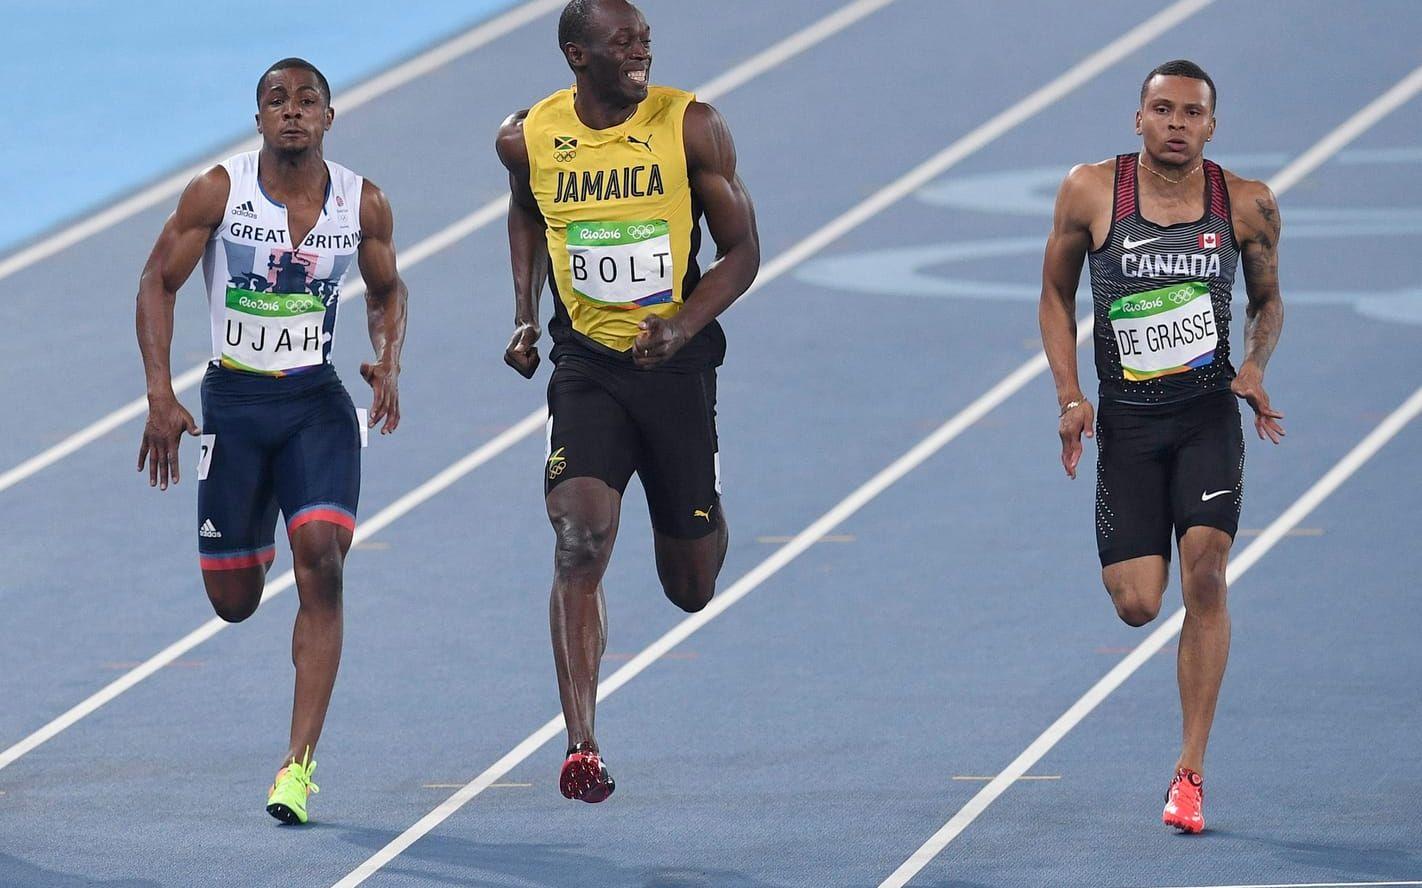 Leende. Usain Bolt visar sin överlägsenhet på sträckan 100 meter när han tar hem sin semifinal och tar sig tid att under målgången vända sig mot kameran och fyra av ett brett leende. Leendet gör braksuccé och blir snart ett meme på Twitter. Bolt tar senare guld på 100 meter i Rio. Foto: TT